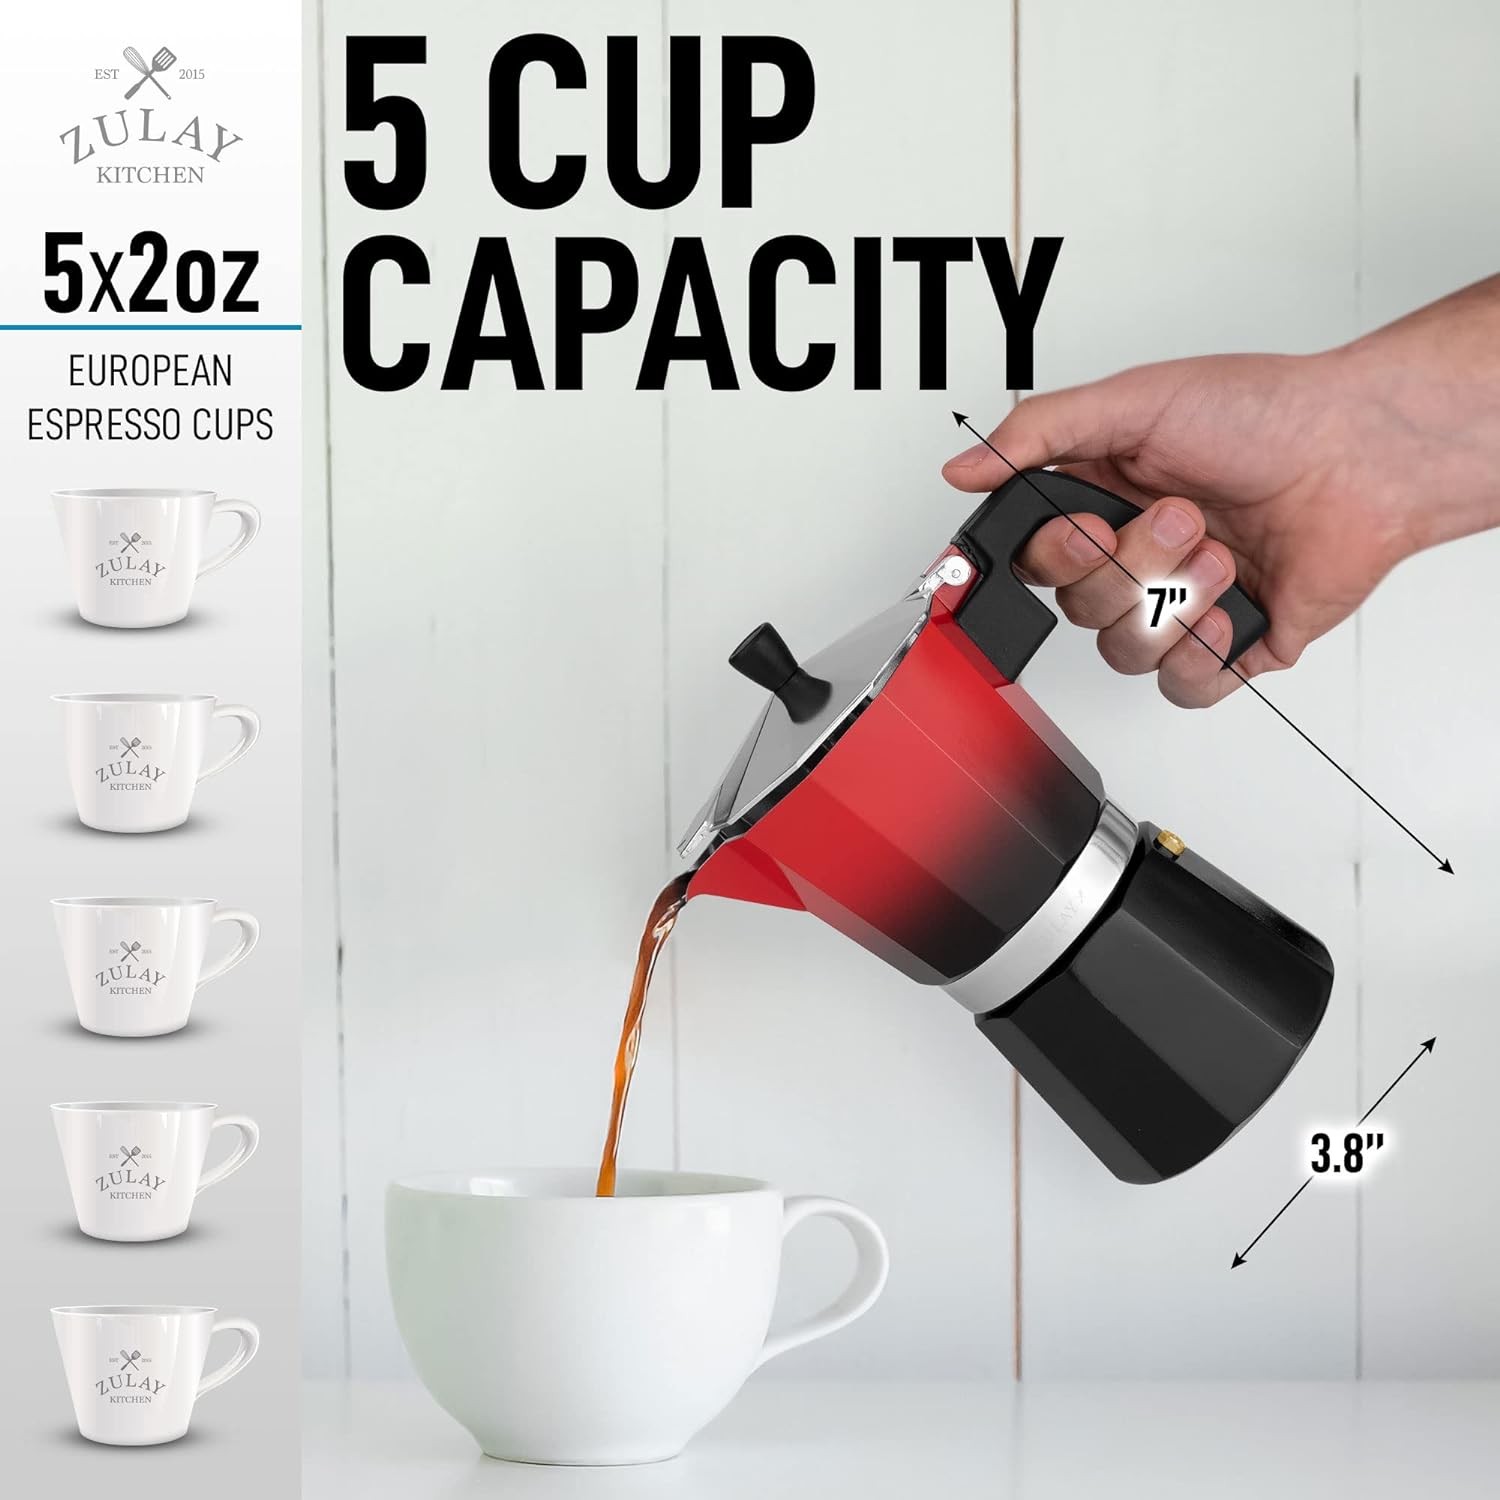 5 cup capacity Stovetop Espresso Cup